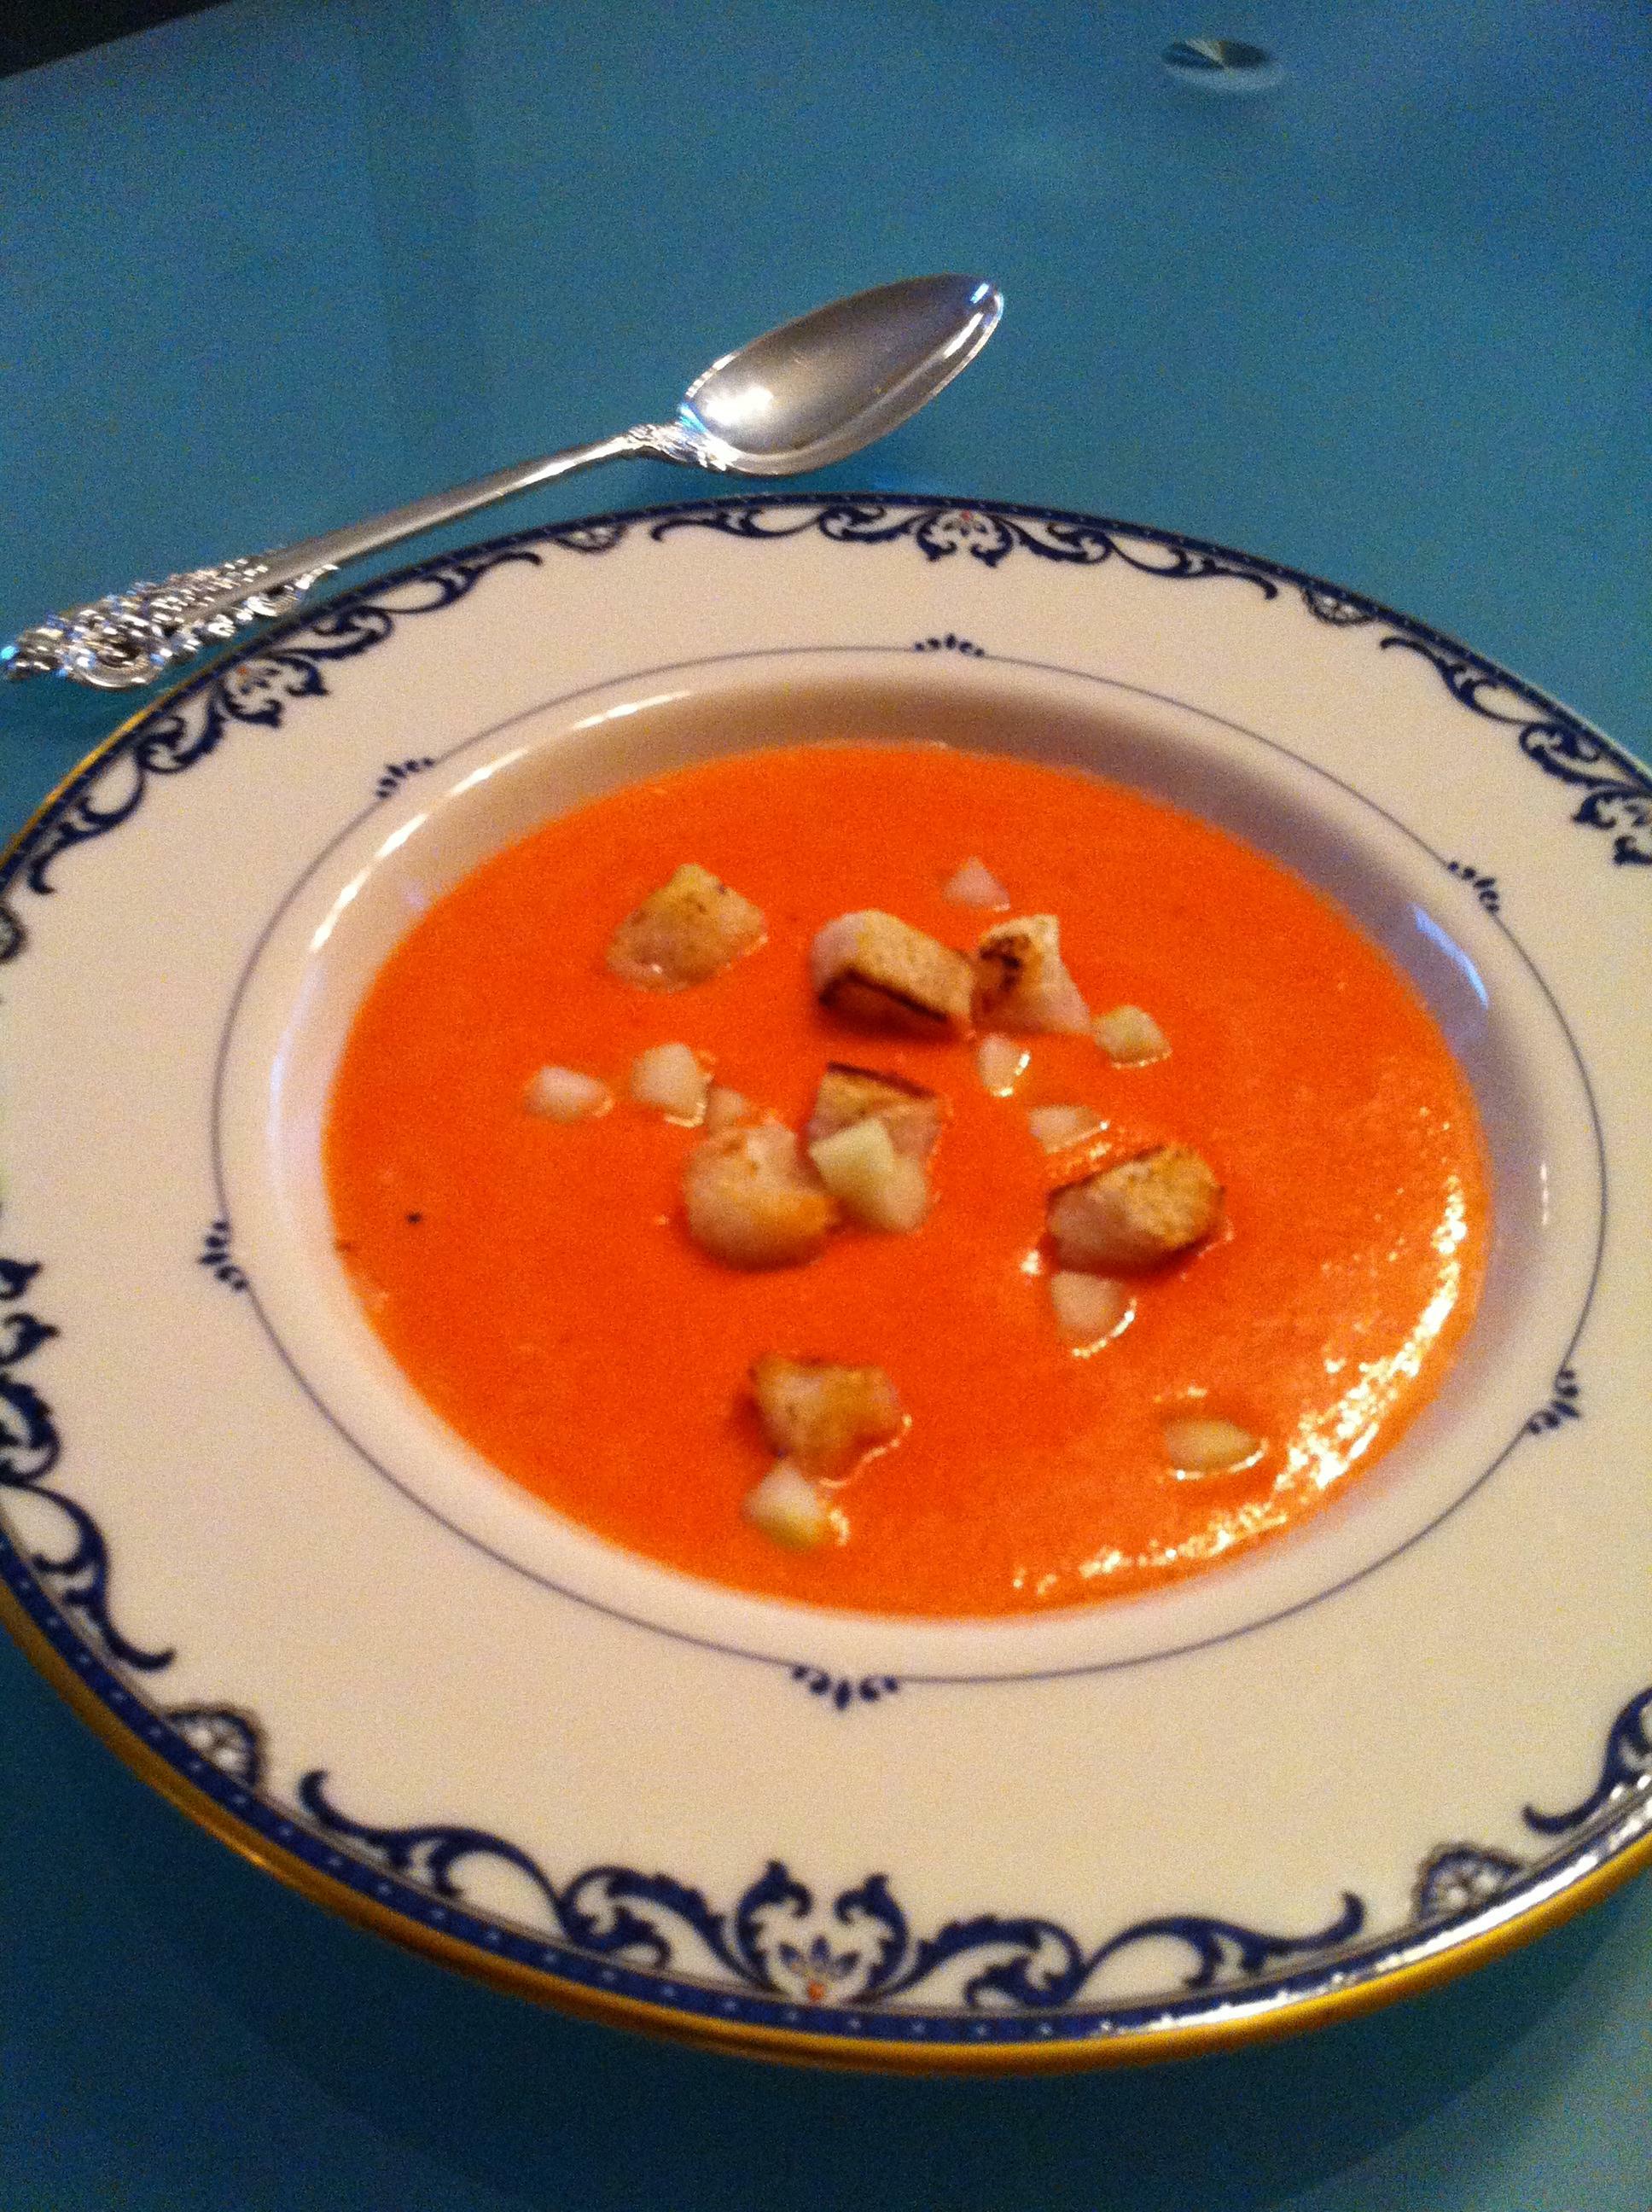 Gazpacho recipe makes bright, complex soup in a blender